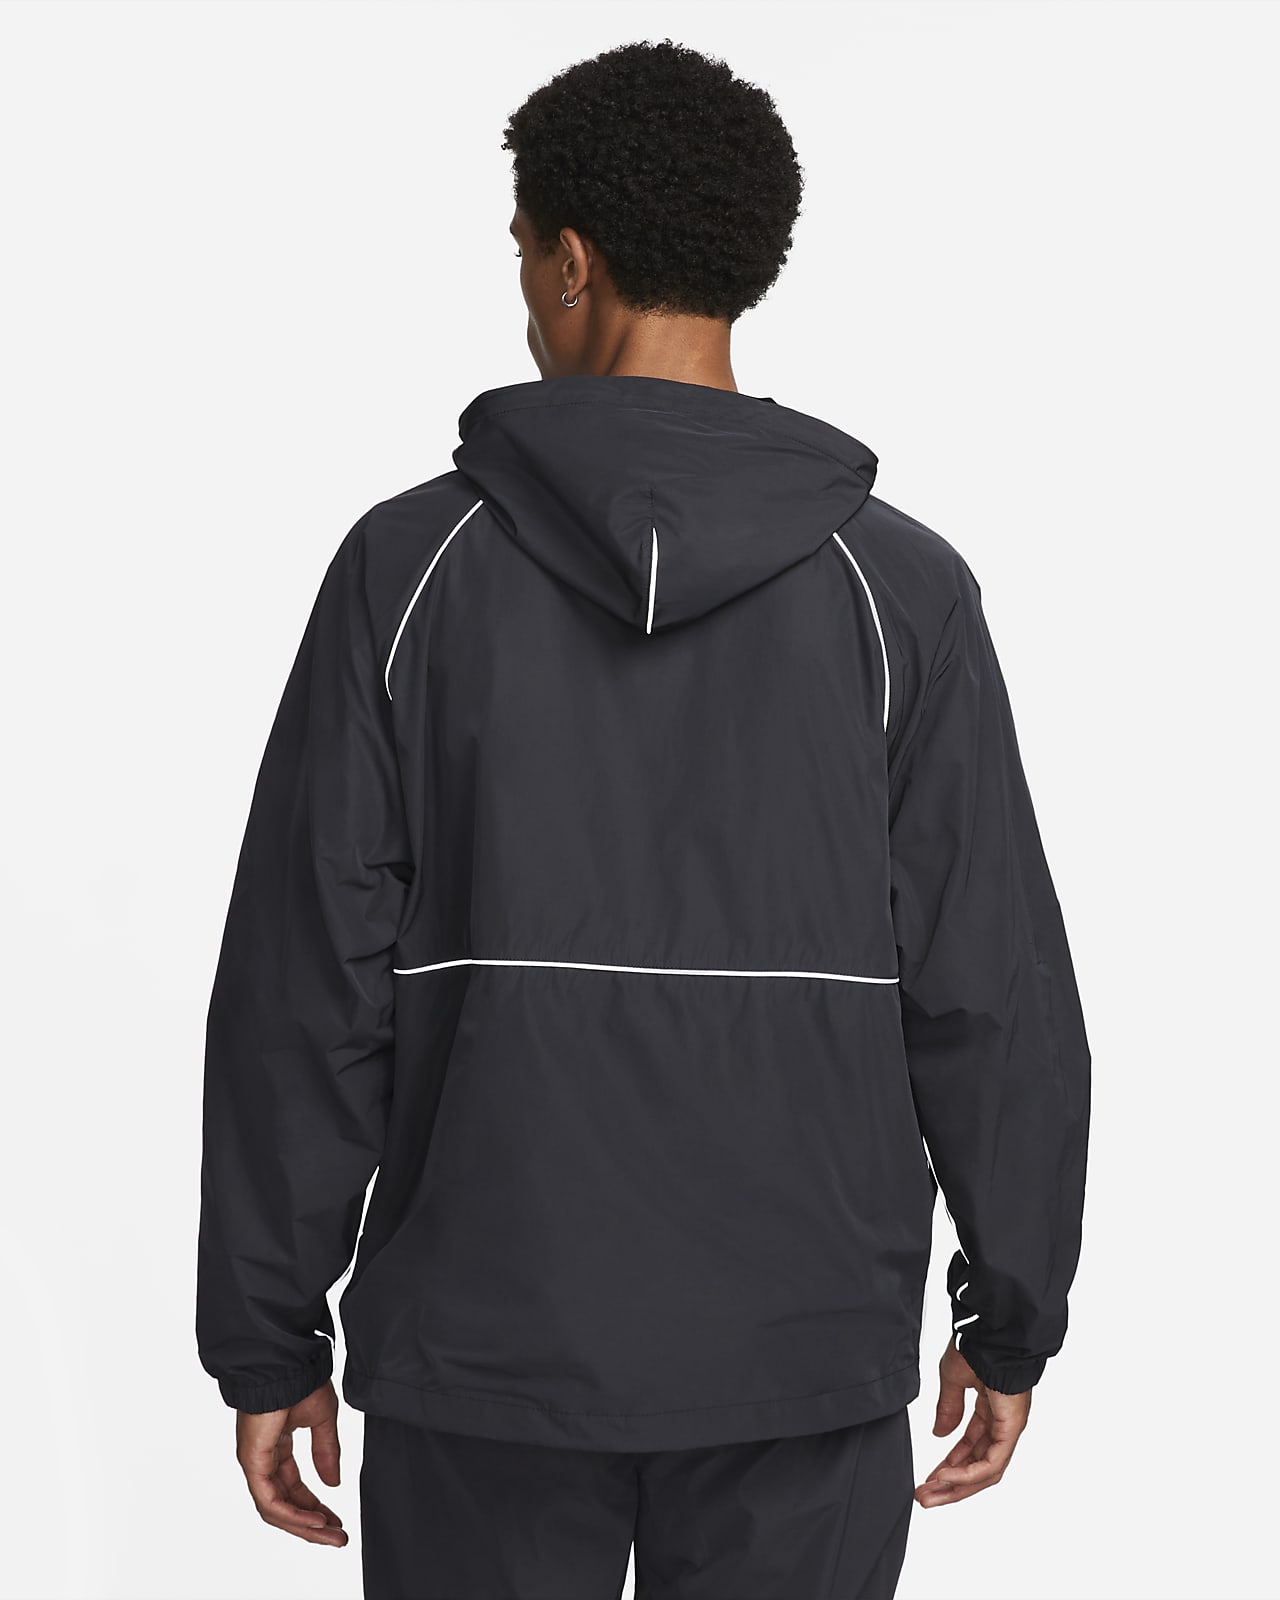 Nike Air Men's Full-Zip Hooded Woven Jacket. Nike AE